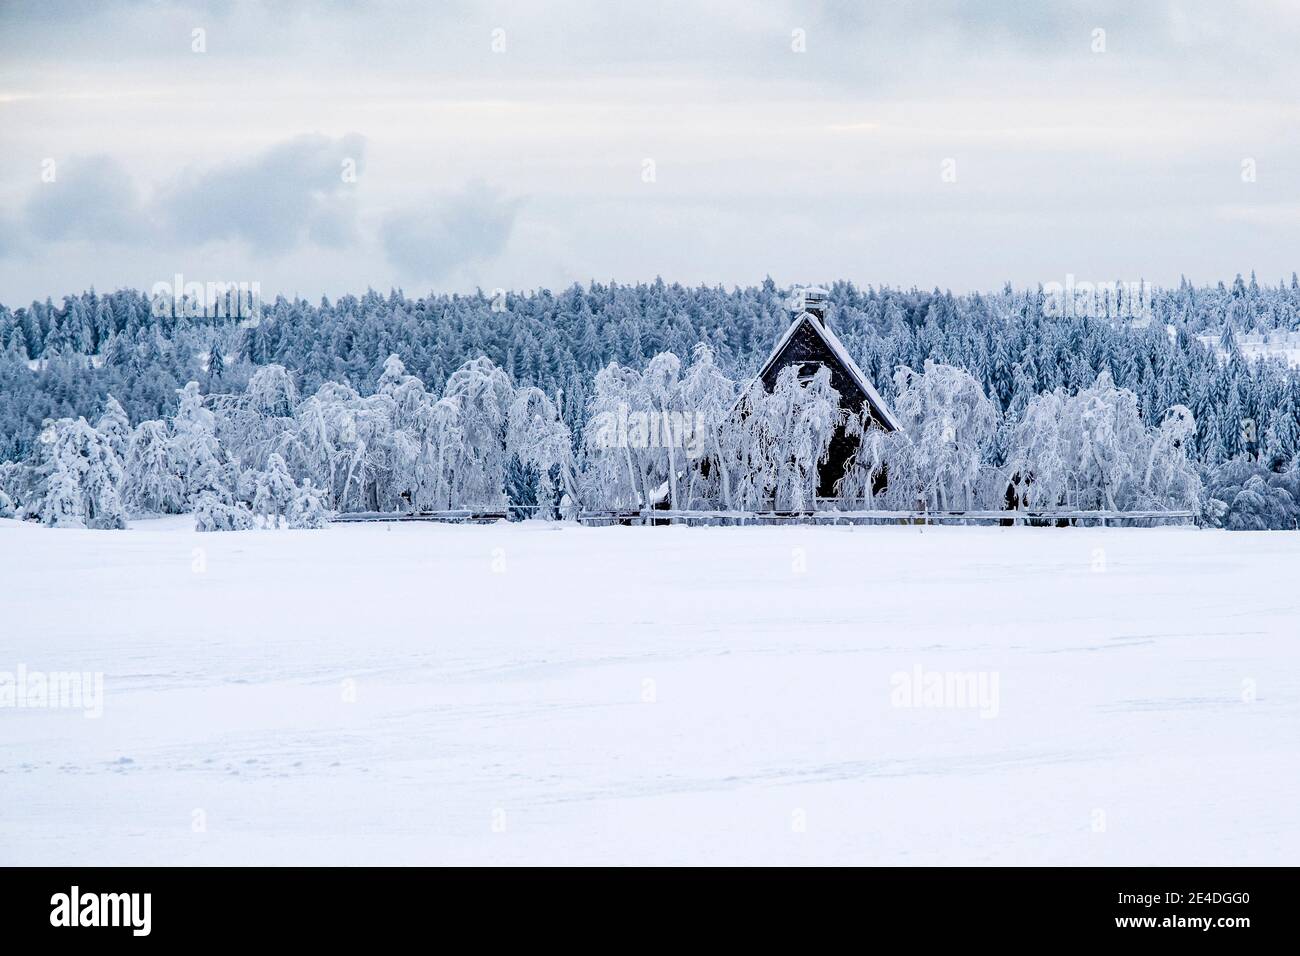 Paysage d'hiver avec arbres, givre, neige et une petite hutte à une journée découverte dans les montagnes Ore. Banque D'Images